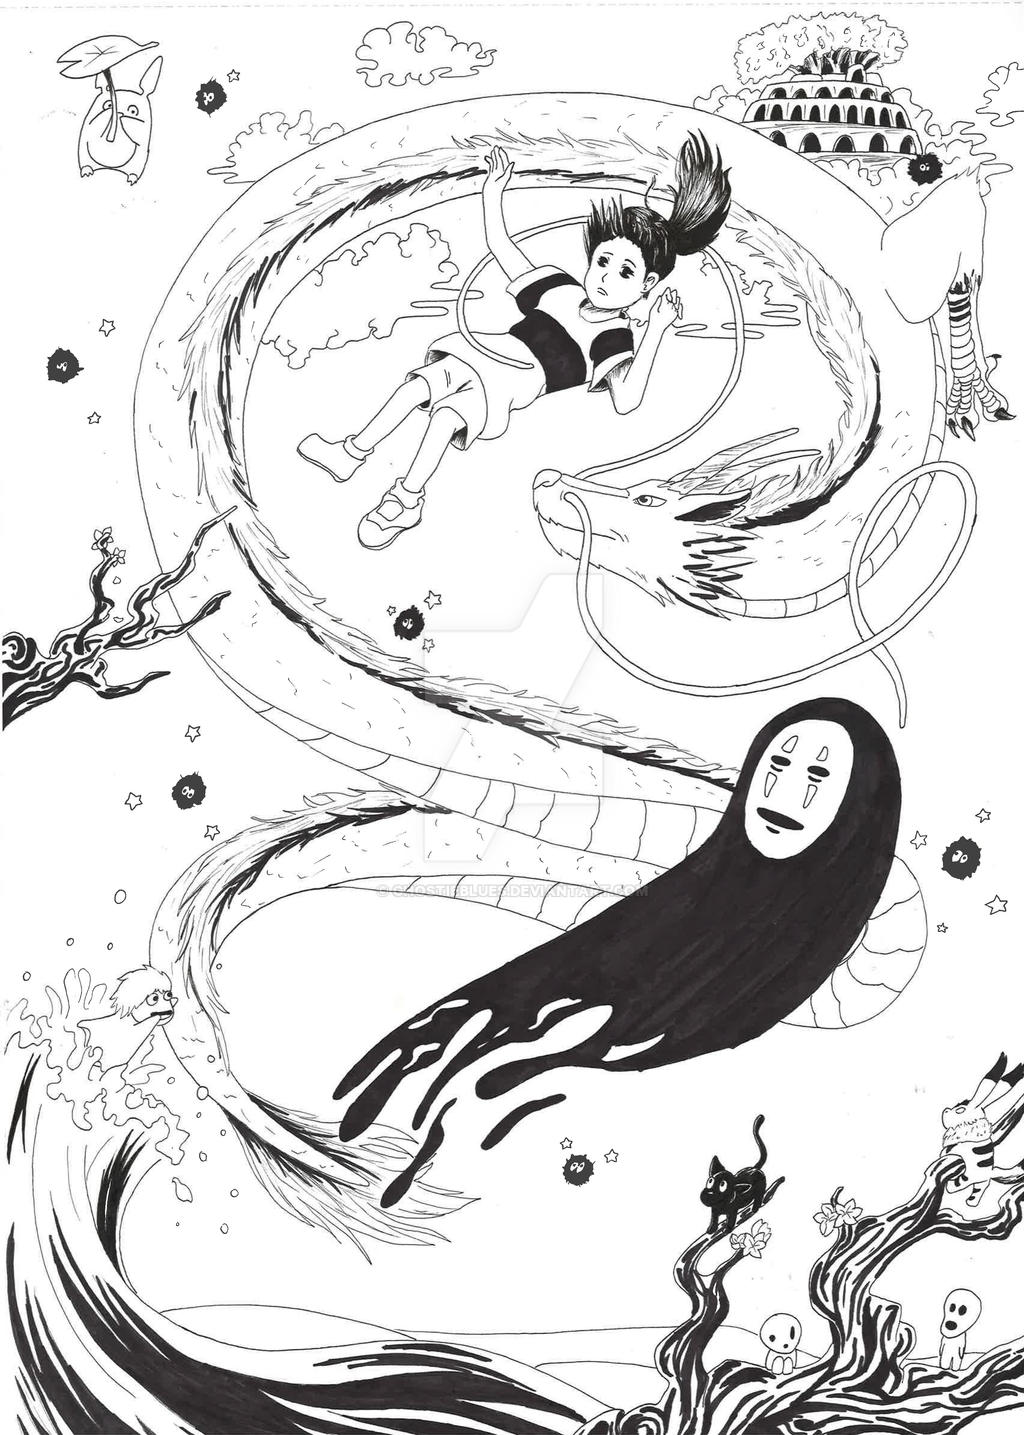 Studio Ghibli Ink drawing by GhostieBlues on DeviantArt